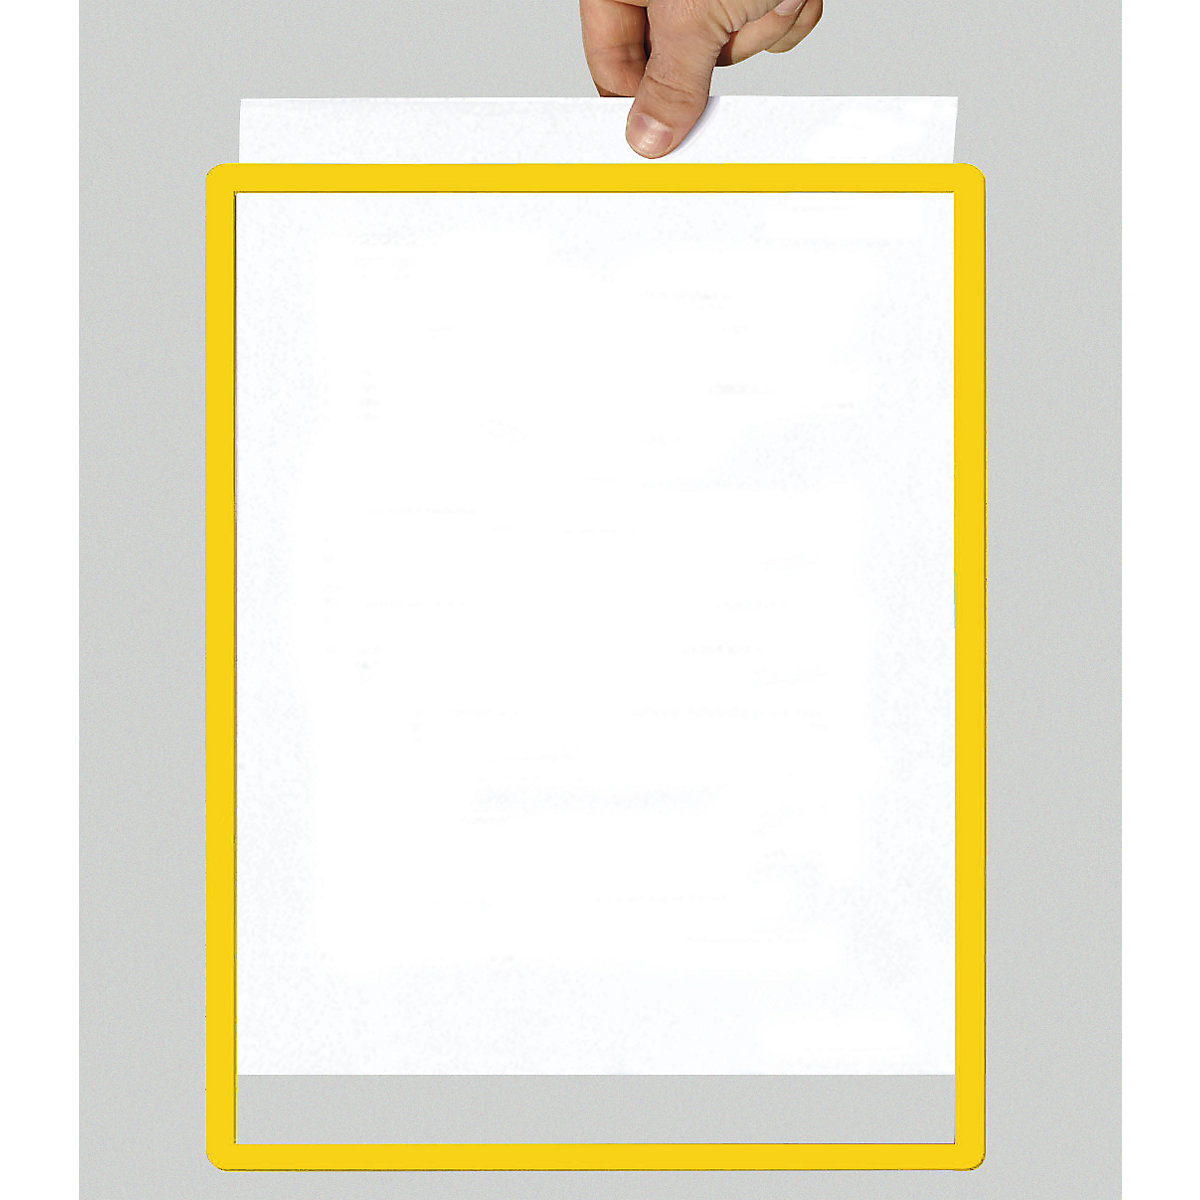 Caixilho com película transparente, papel com formato A5, embalagem de 10 unid., autocolante, amarelo-10